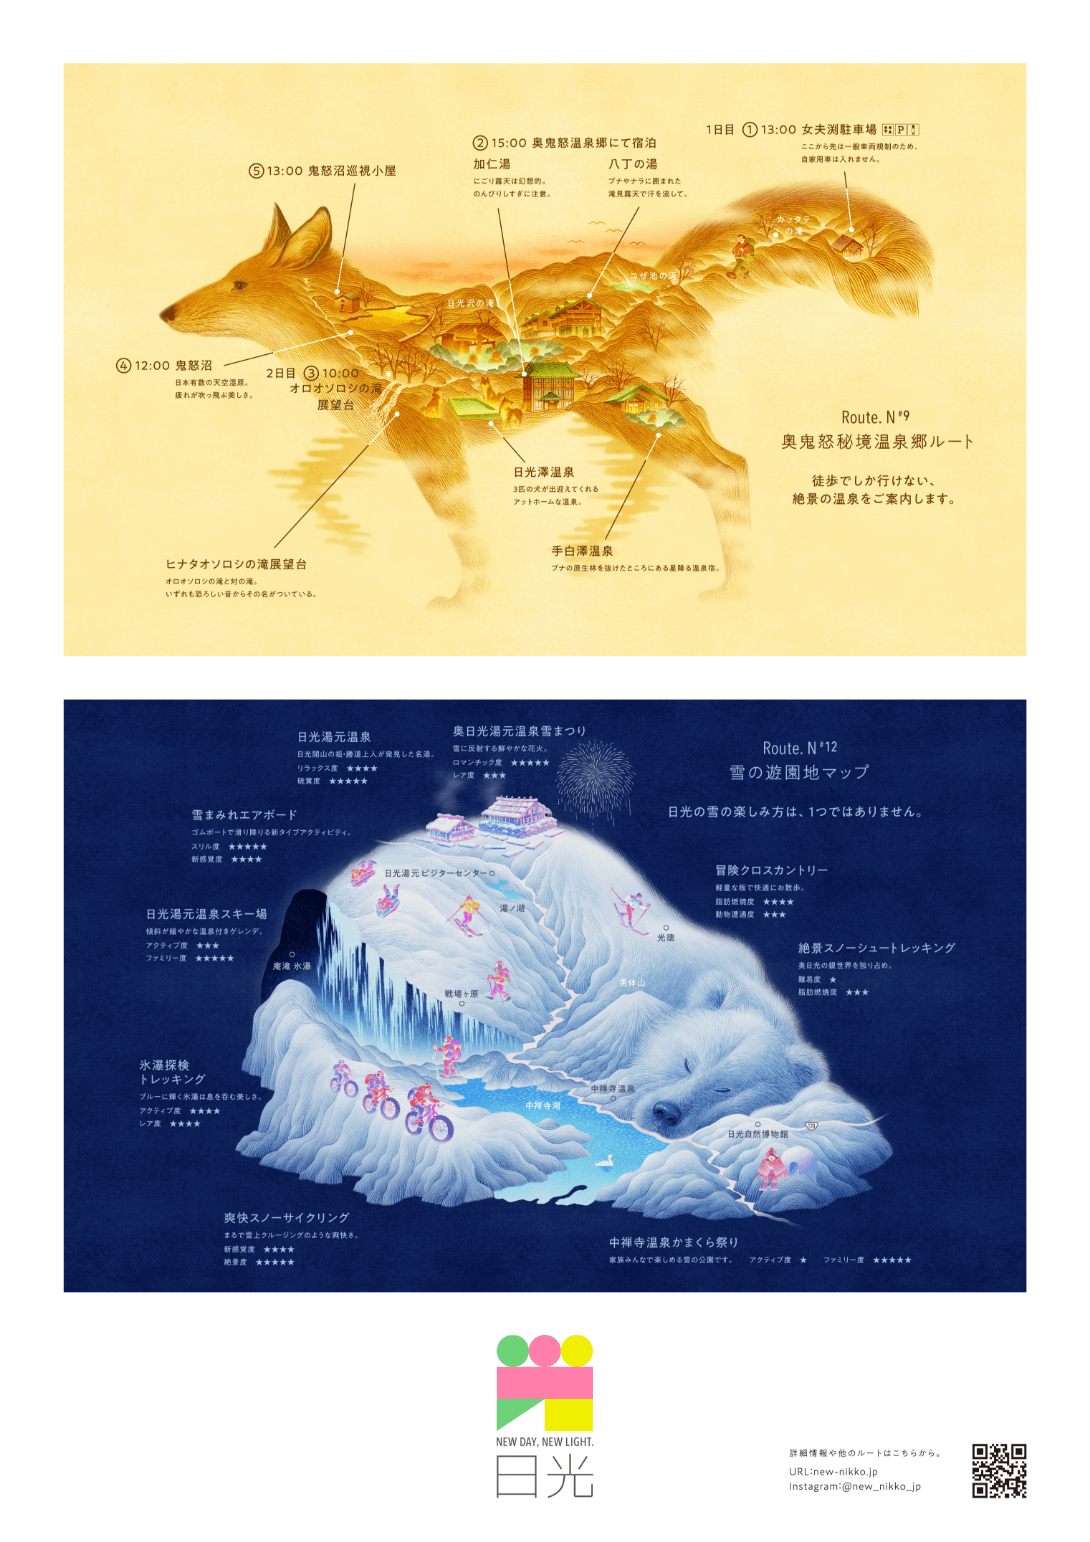 きつねを横から見た姿に奥鬼怒秘境温泉郷の場所が描かれているイラストとシロクマが寝ている姿に雪の遊園地のマップが描かれているポスター